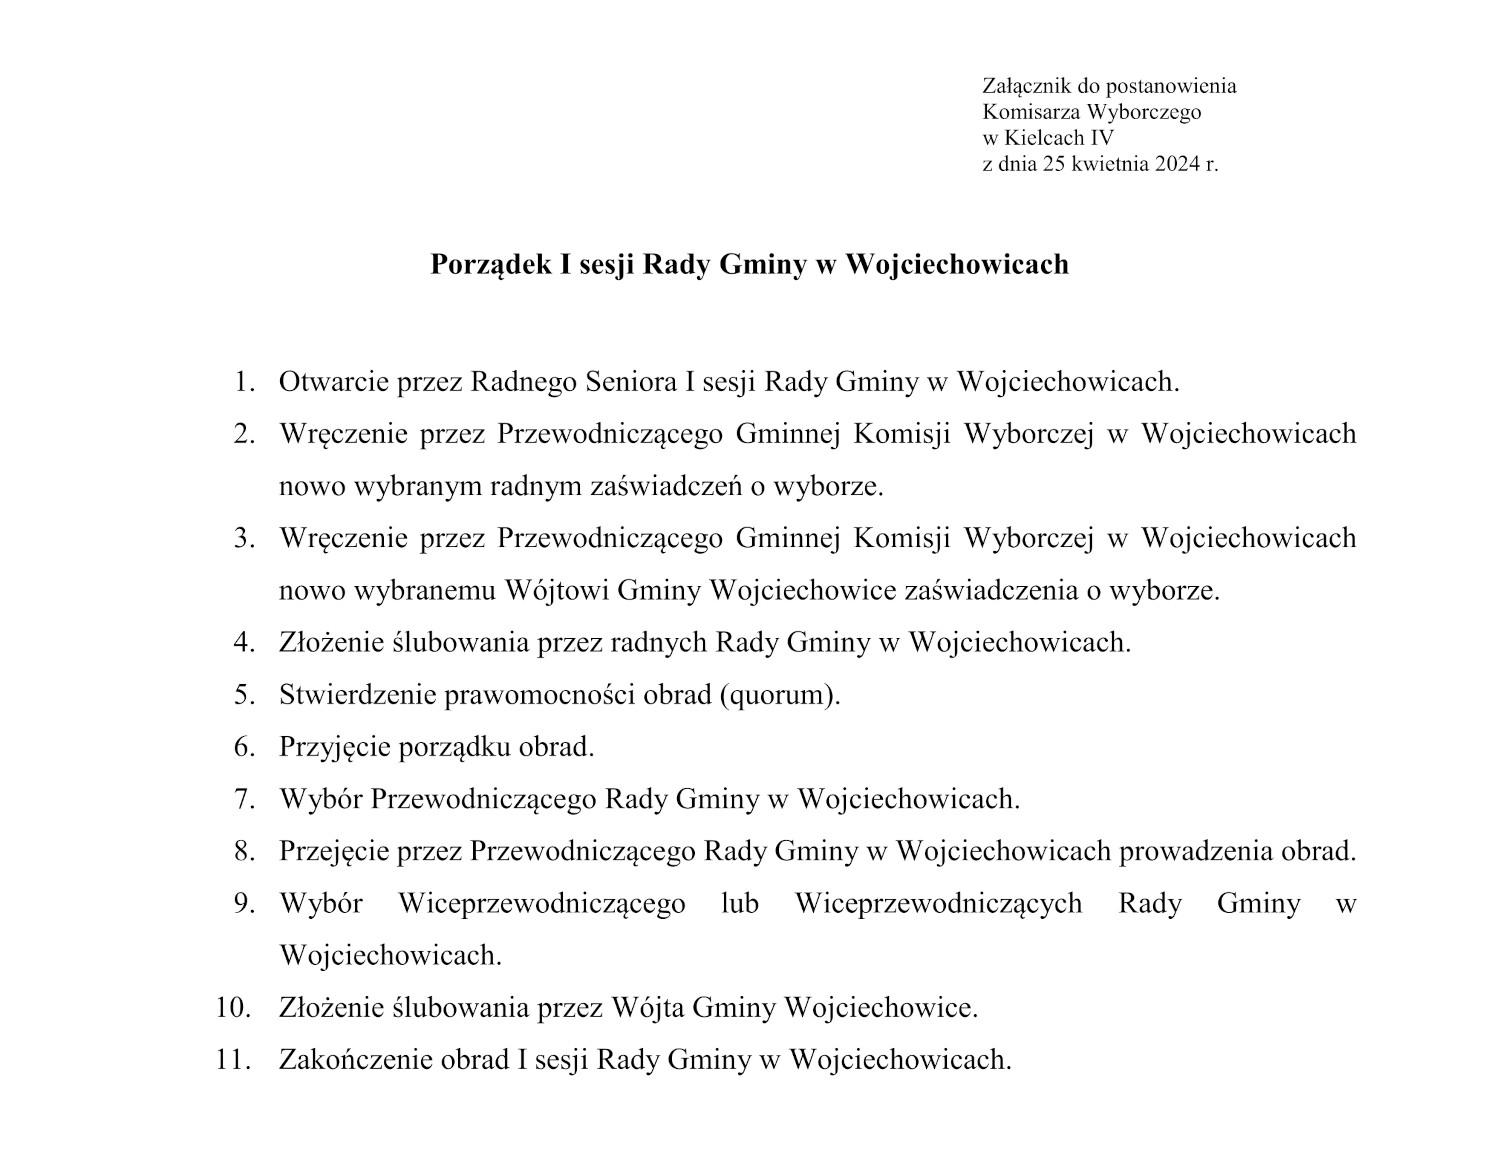 Załącznik do postanowienia nr 394/2024 Komisarza Wyborczego w Kielcach IV